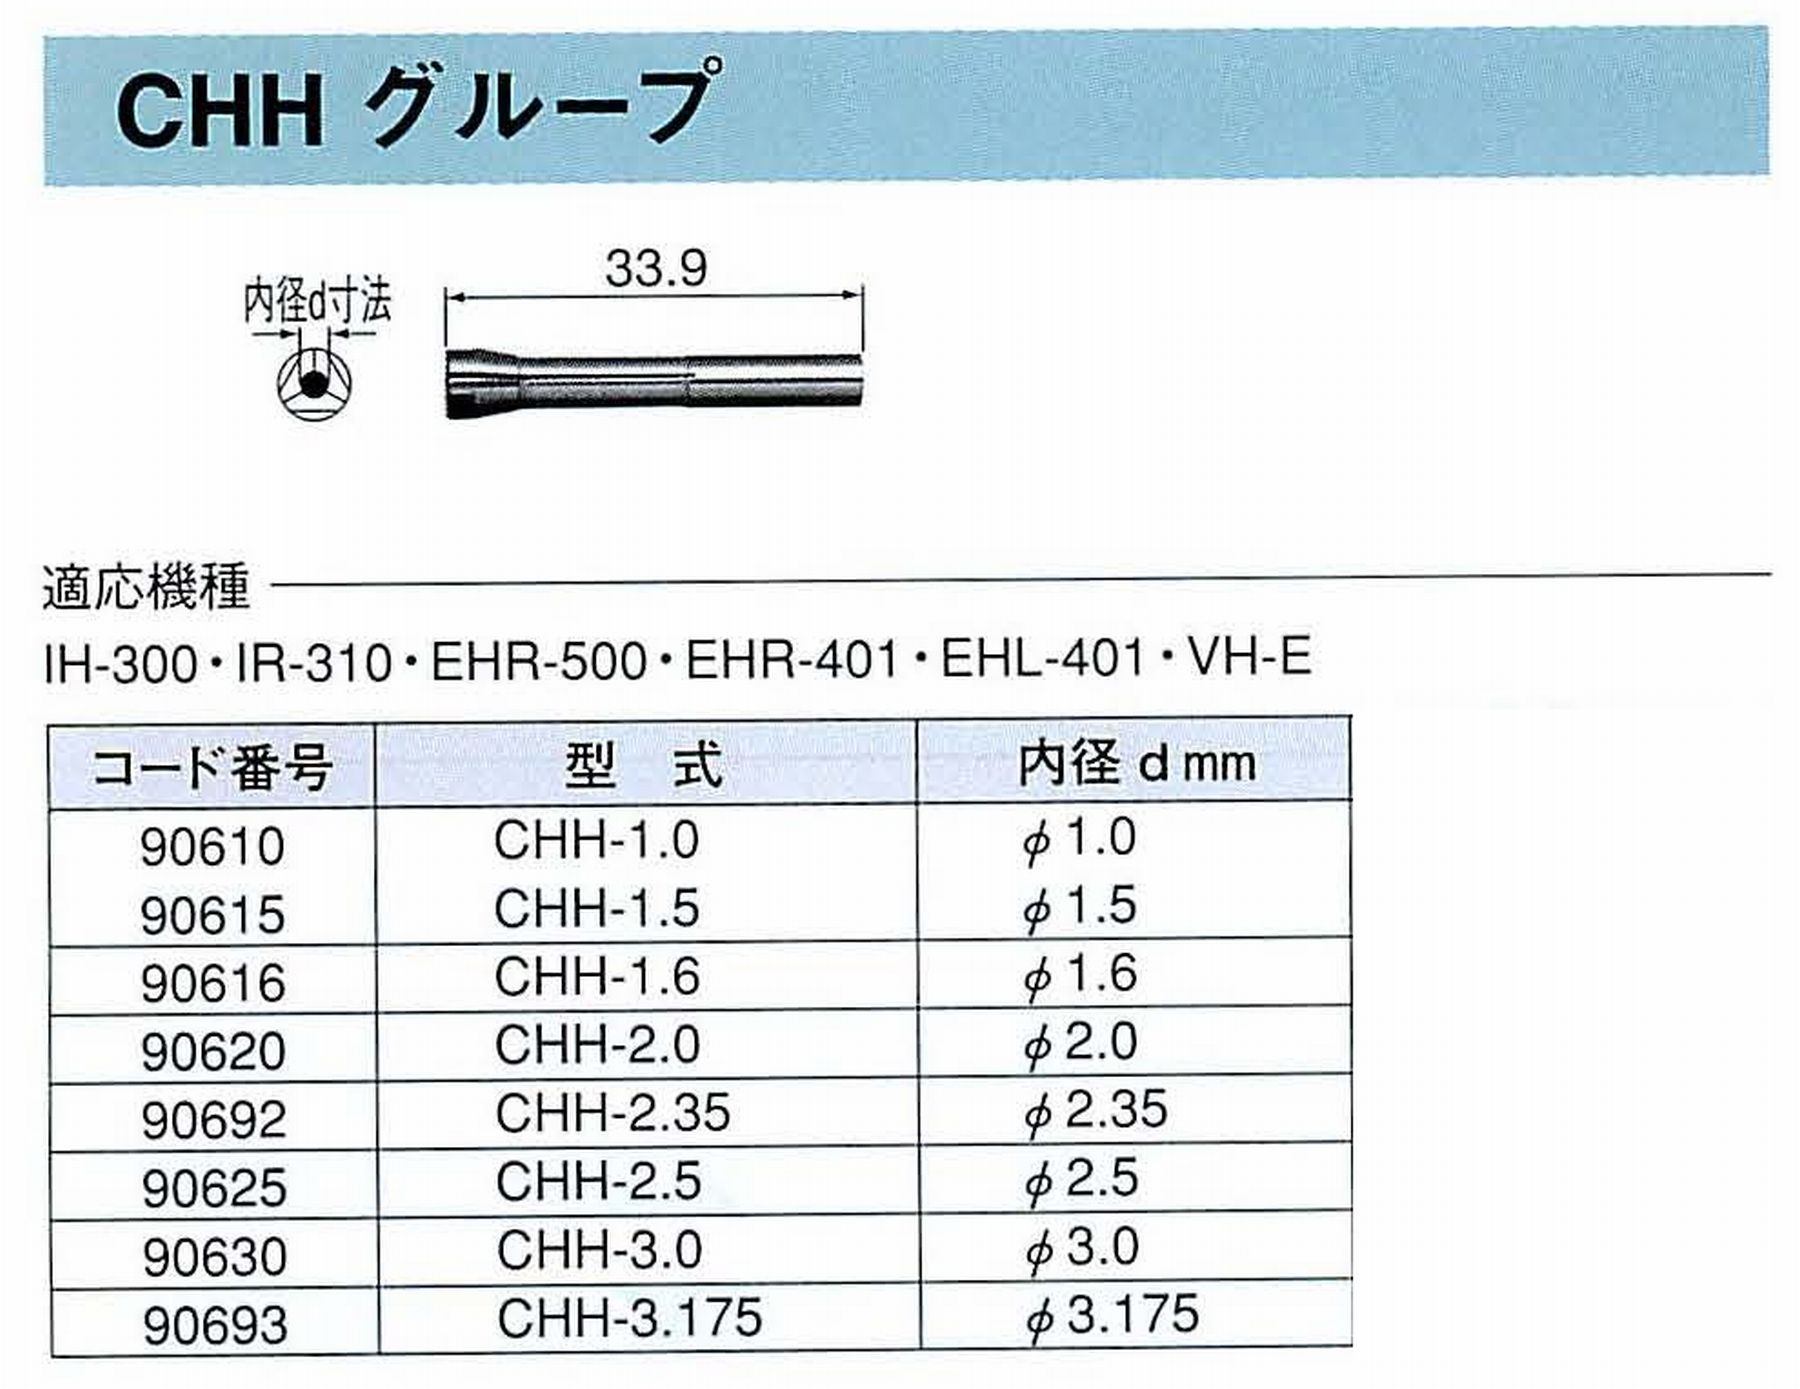 ナカニシ/NAKANISHI コレットチャック コード番号 90616 型式 CHH-1.6 内径:Φ1.6